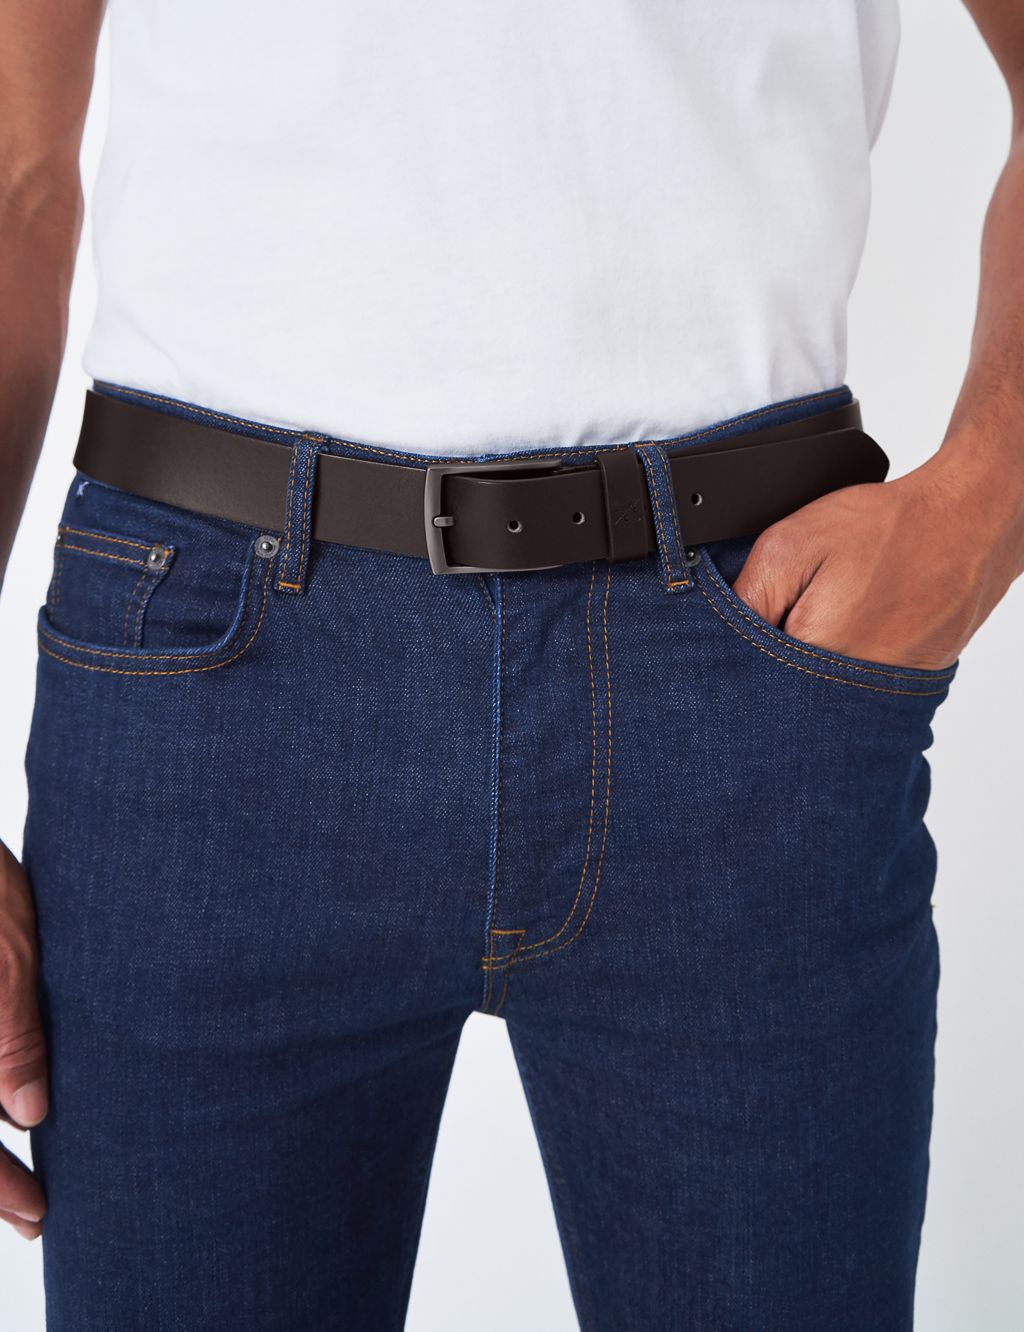 Leather Smart Belt image 1